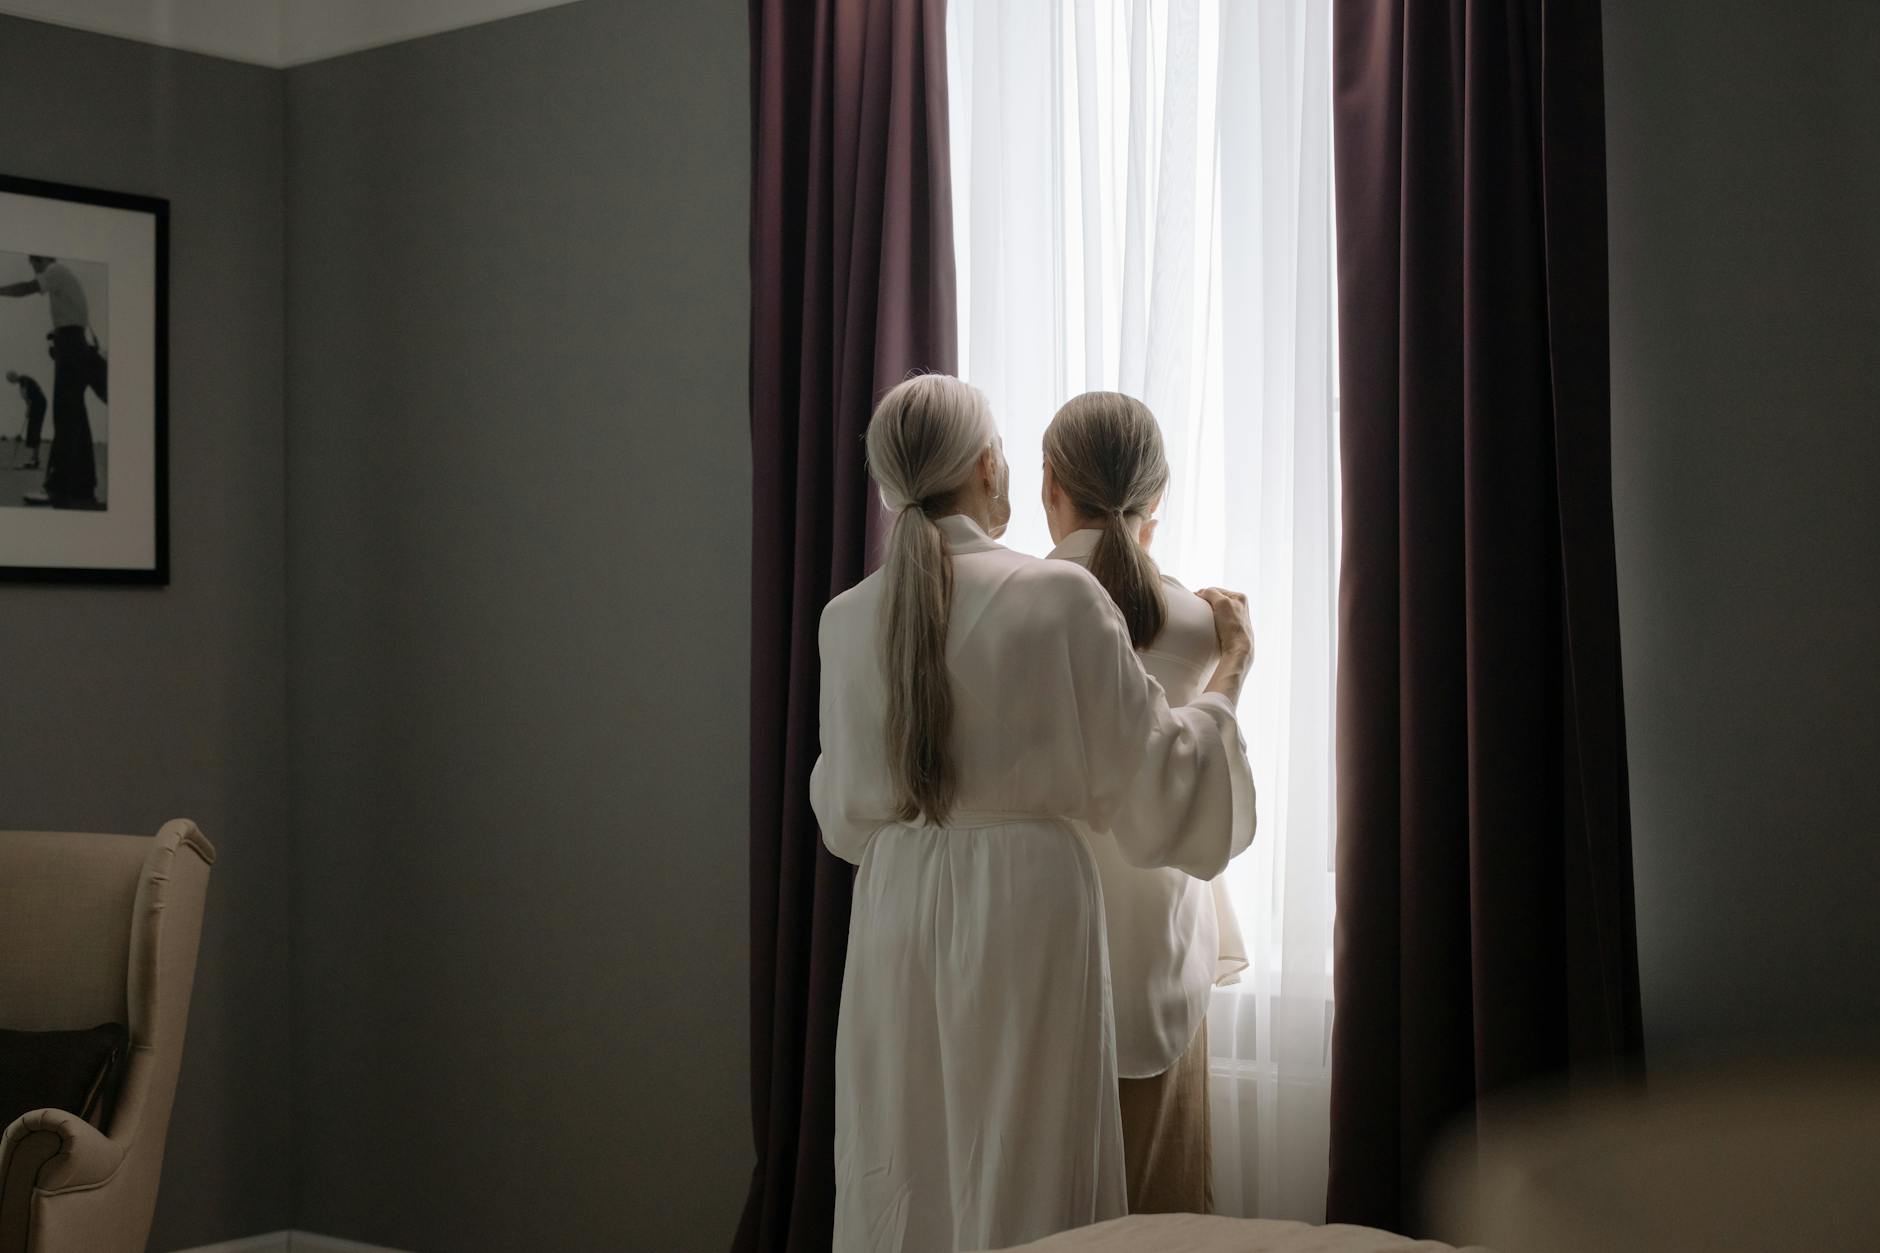 2 Women in White Dress Standing Beside Window